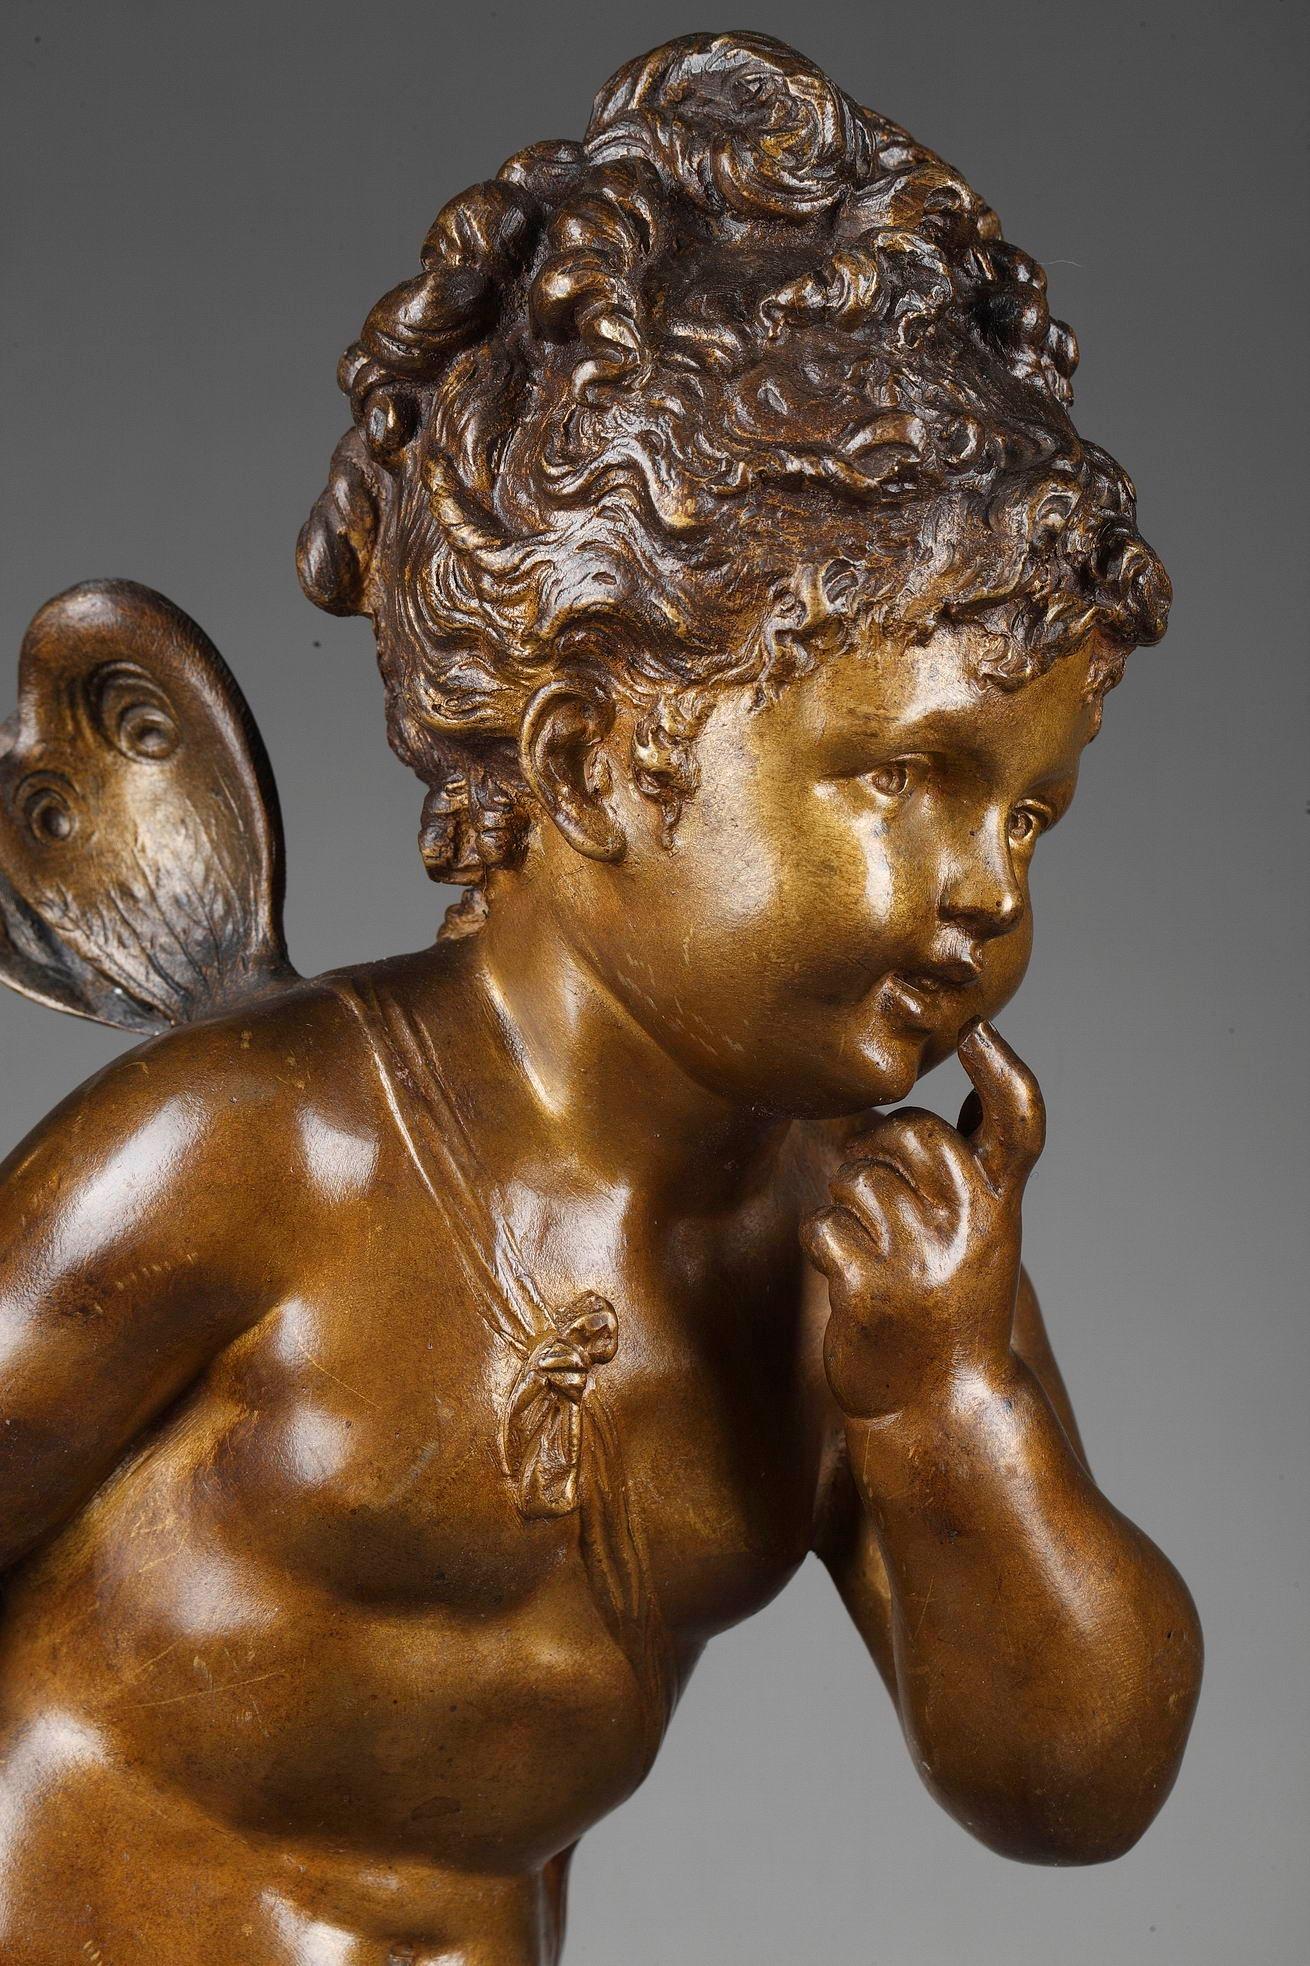 Diese braun und gold patinierte Bronzefigur wurde von dem französischen Bildhauer Paul Duboy geschaffen. Es zeigt ein kleines Mädchen, Psyche, das auf einem naturalistischen Sockel steht. Die Bronzeskulptur steht auf einem runden Marmorsockel.